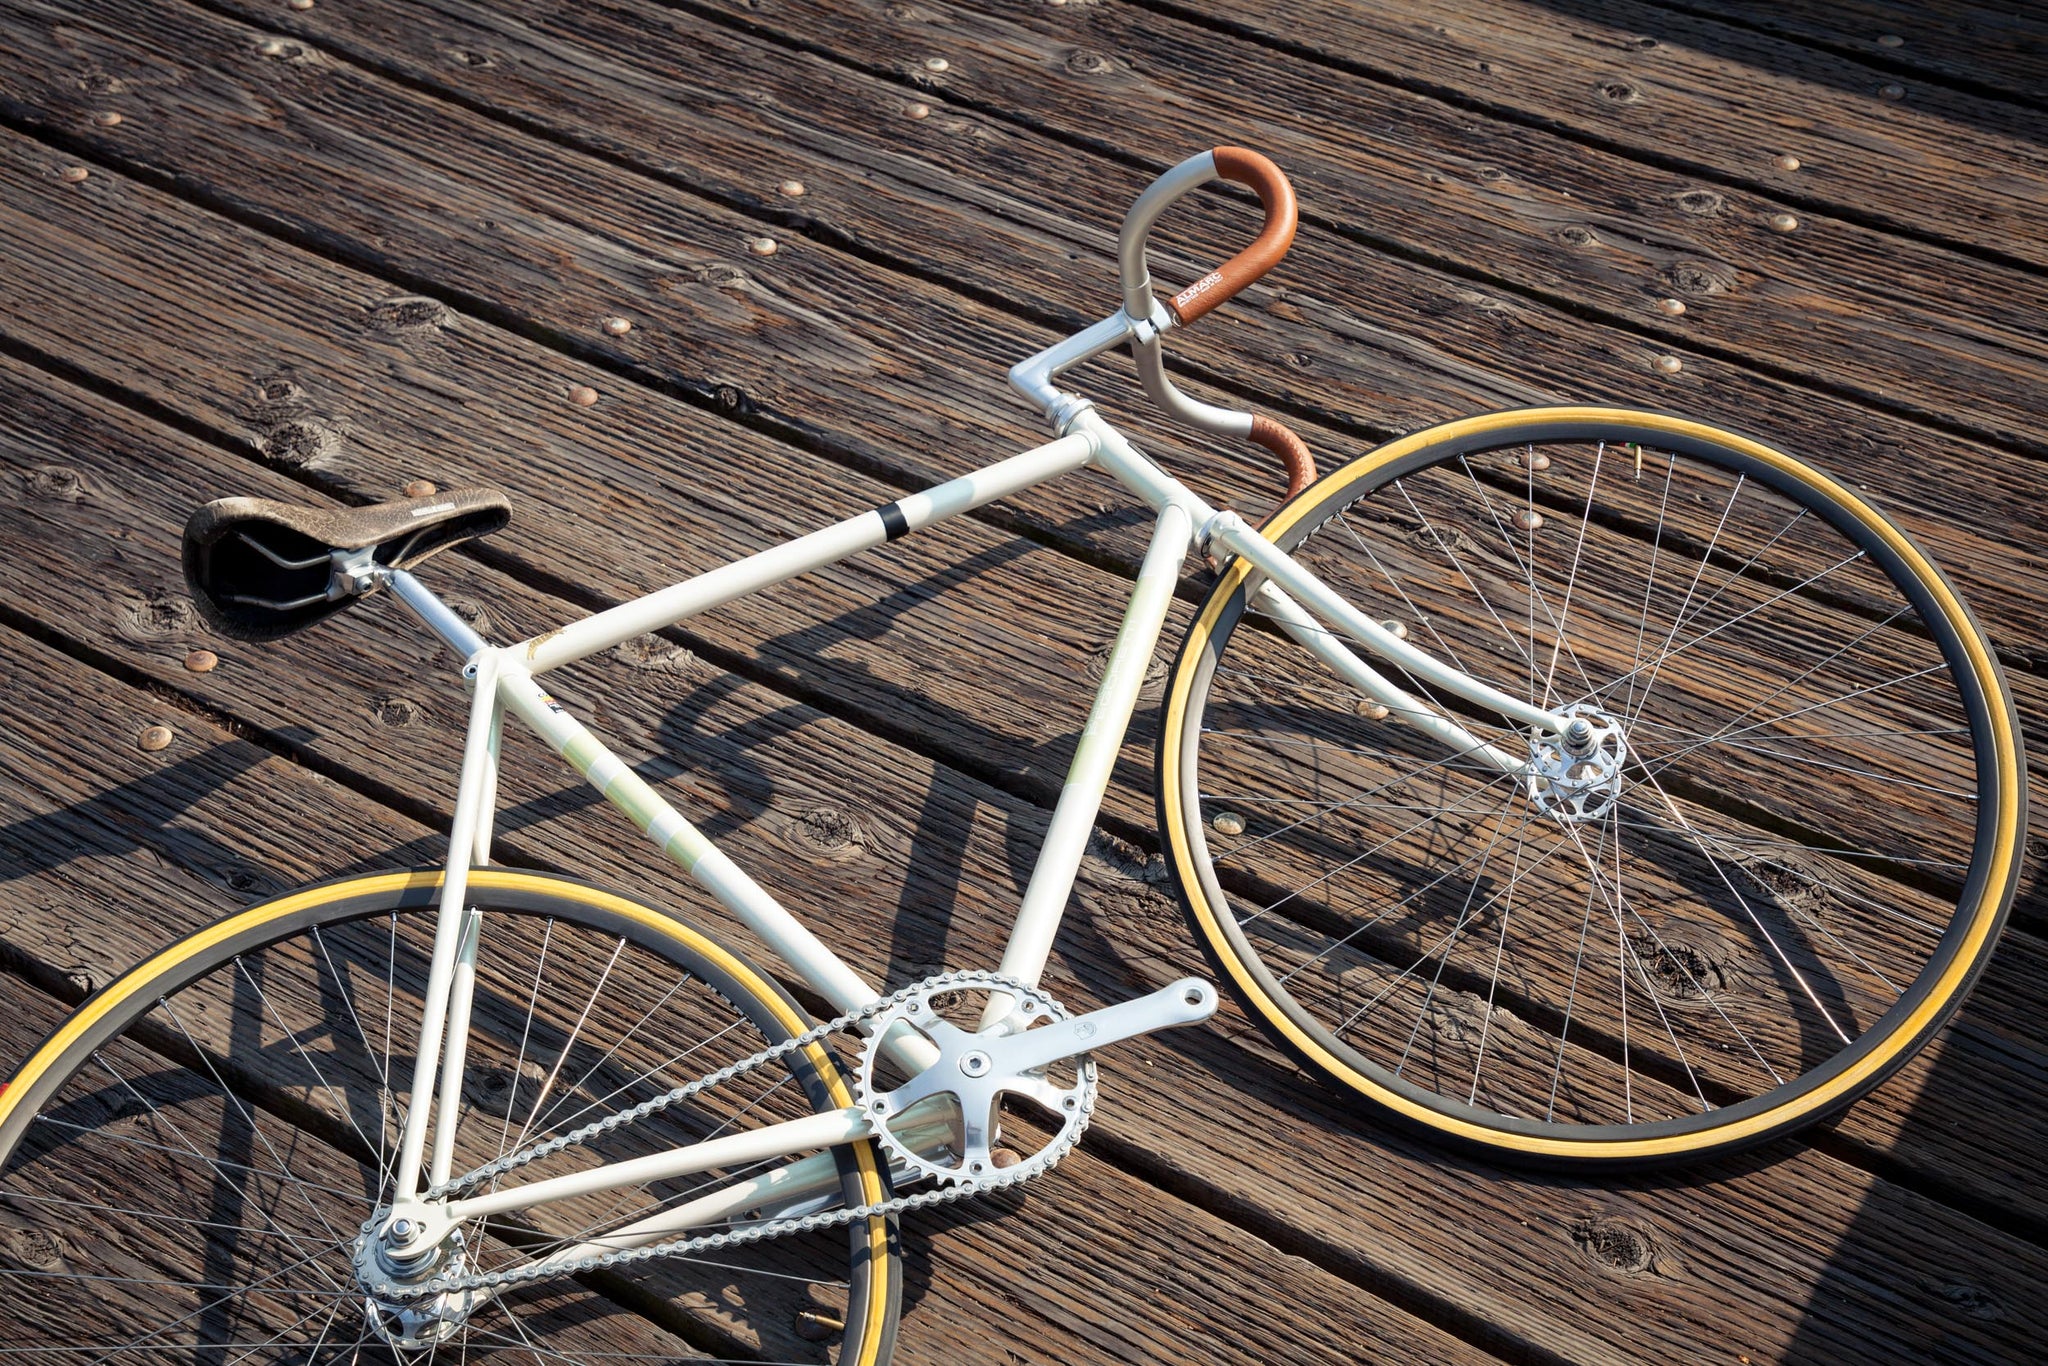 Bike of the Week: A Pegoretti Pista